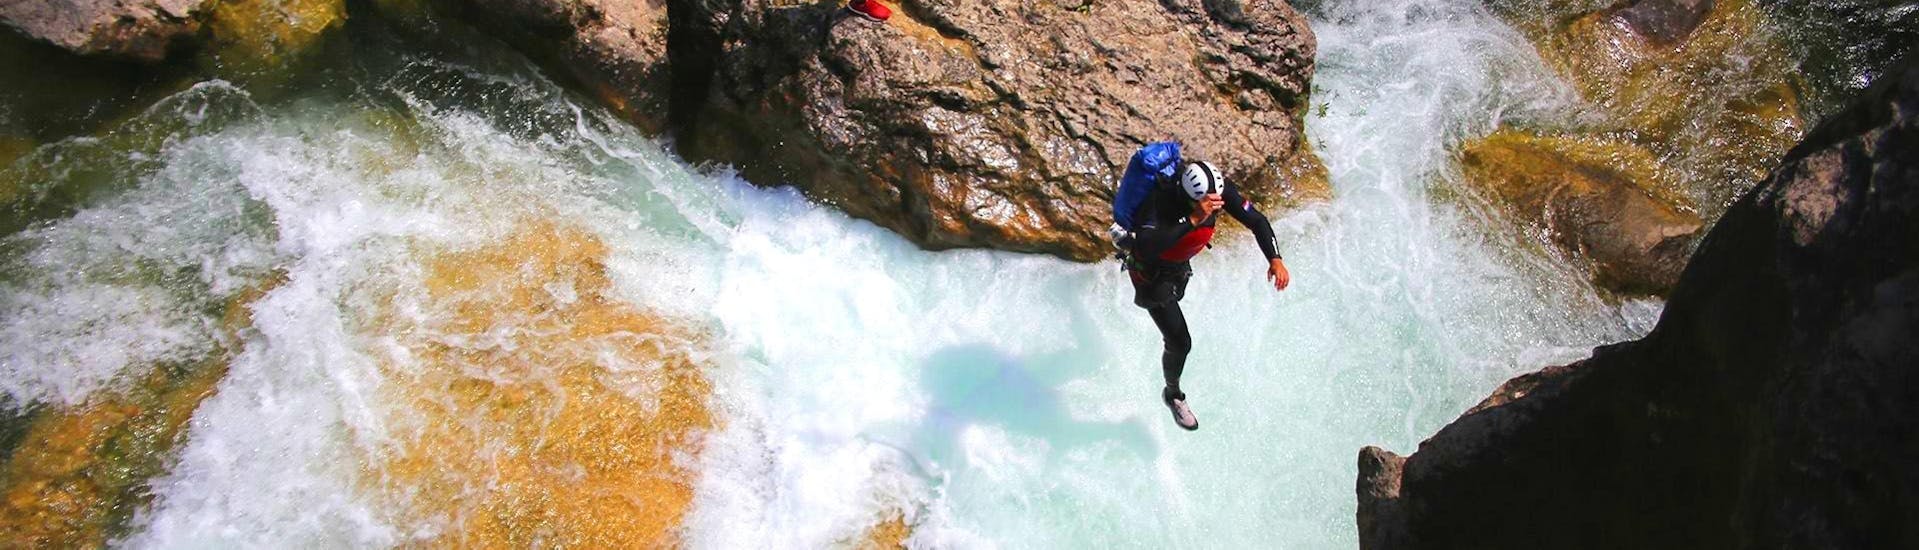 Un guide d'Adventure Dalmatia saute dans l'eau pendant le canyoning extrême de la rivière Cetina.